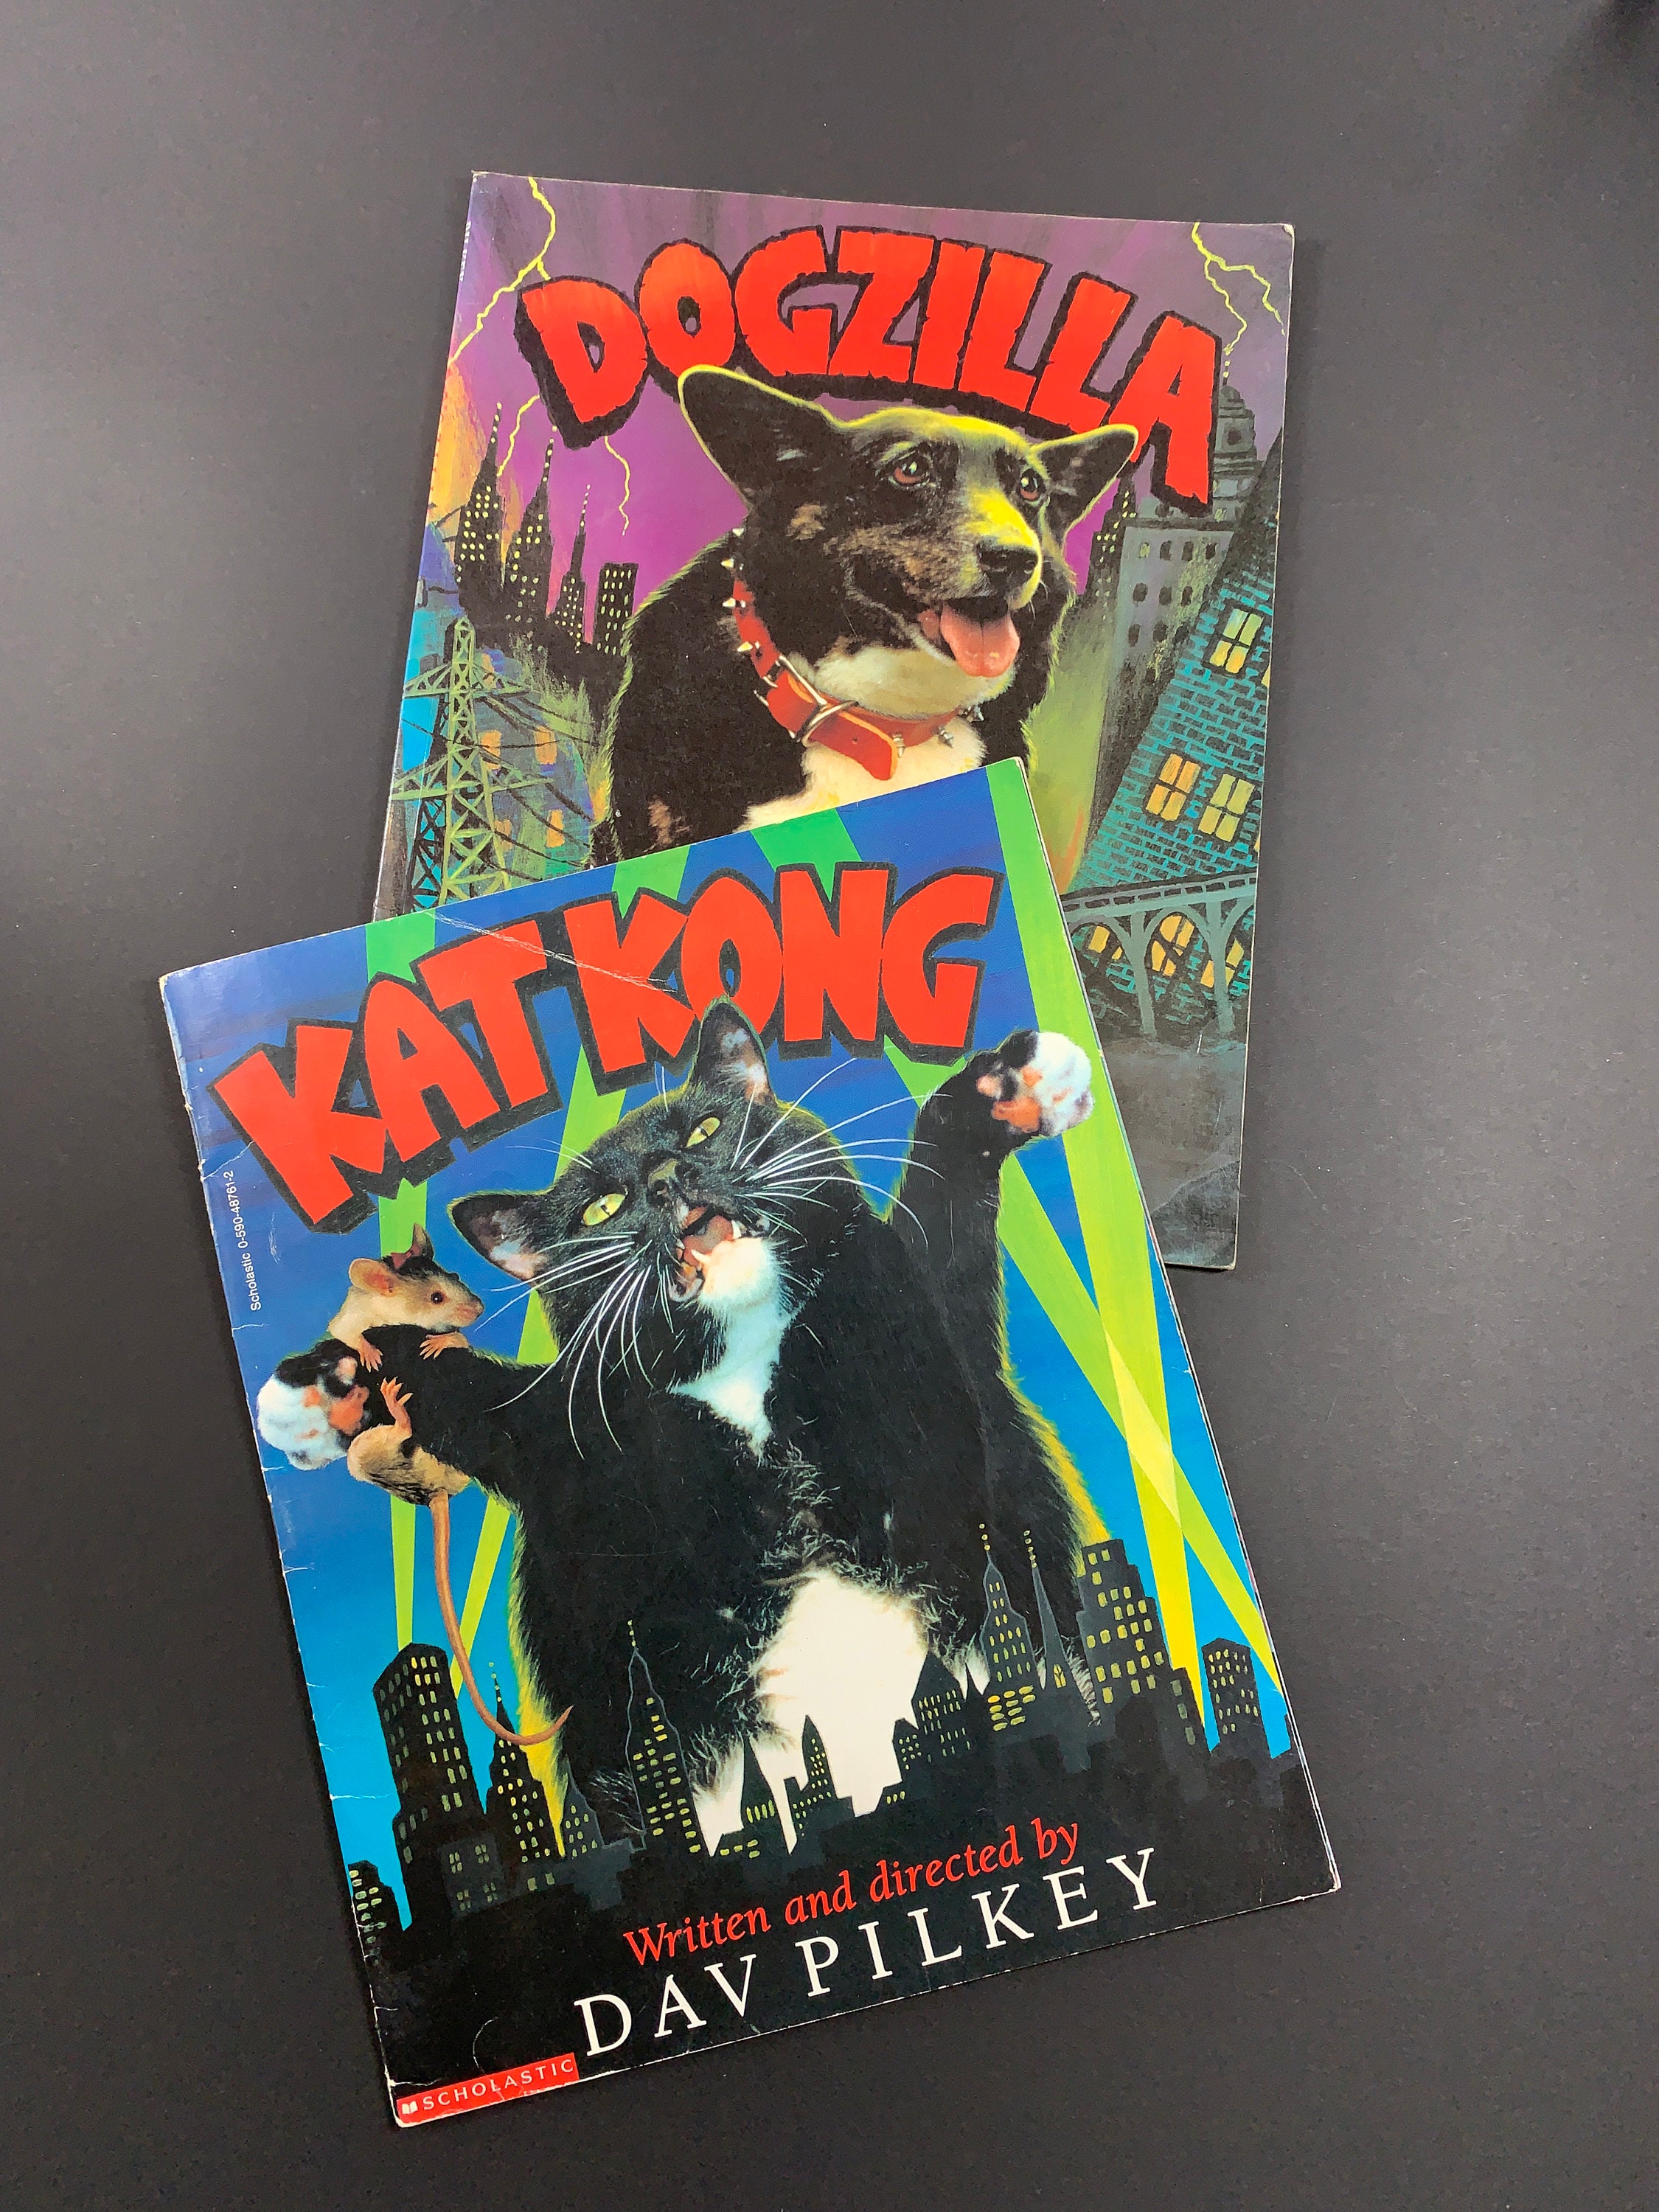 Kat Kong [Book]